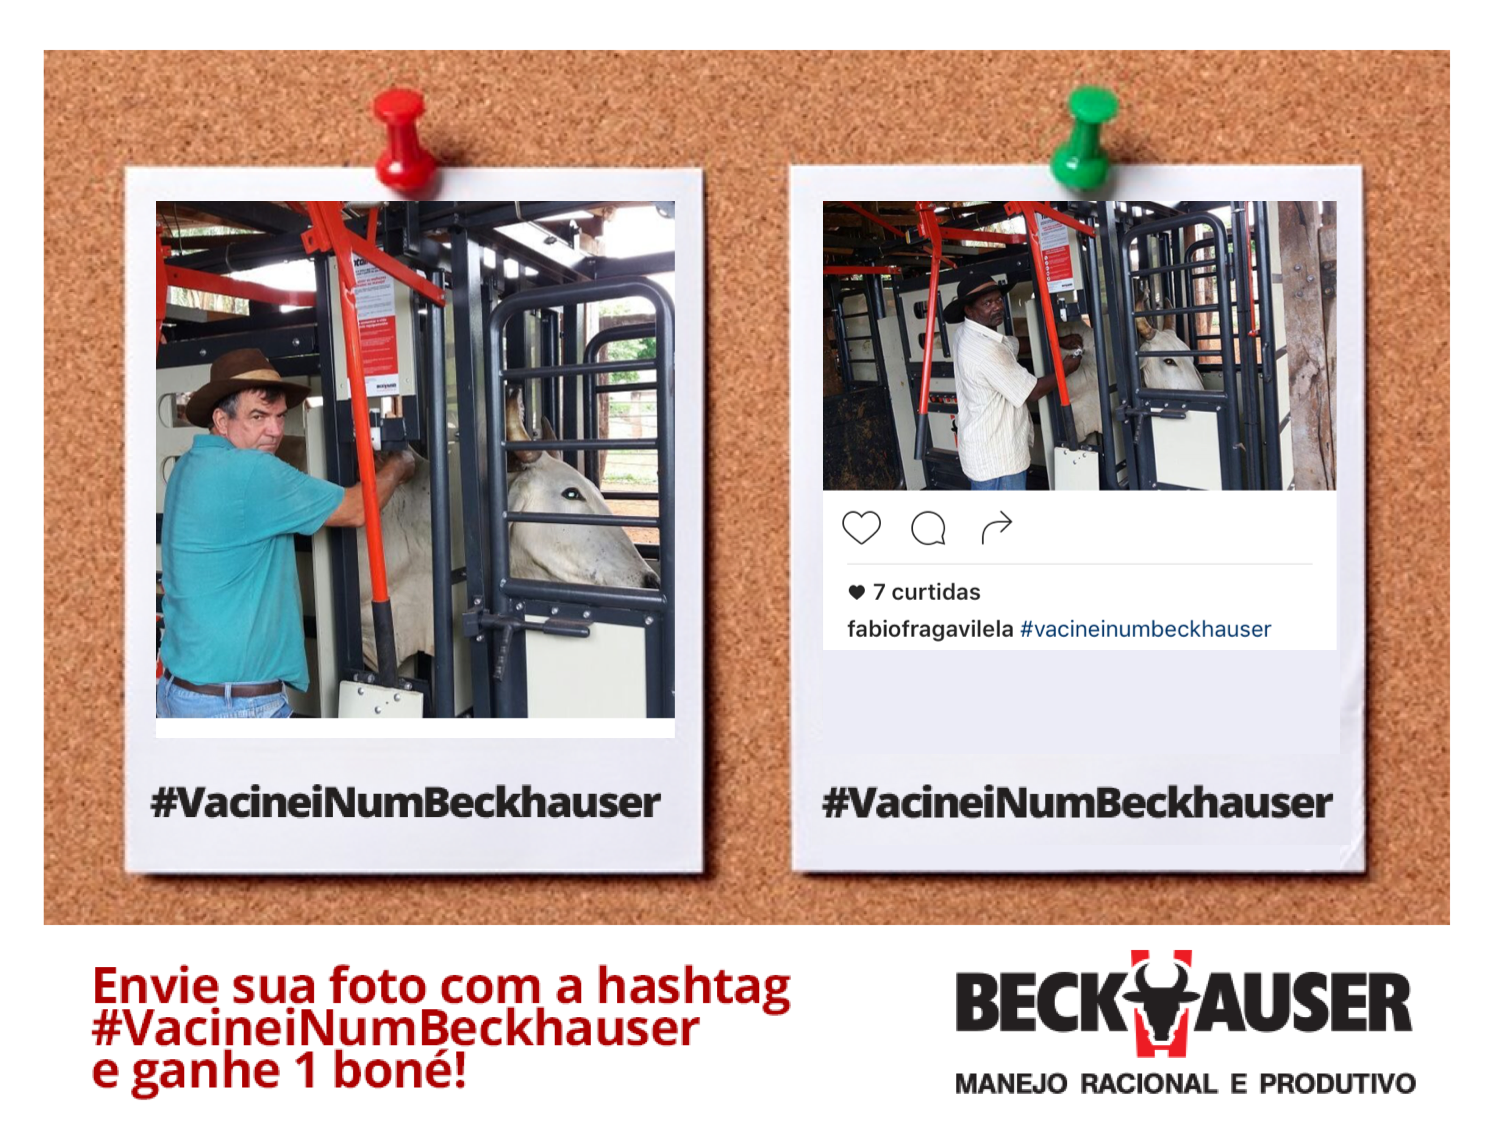 Campanha “Vacine com Beckhauser” faz sucesso nas redes sociais da empresa